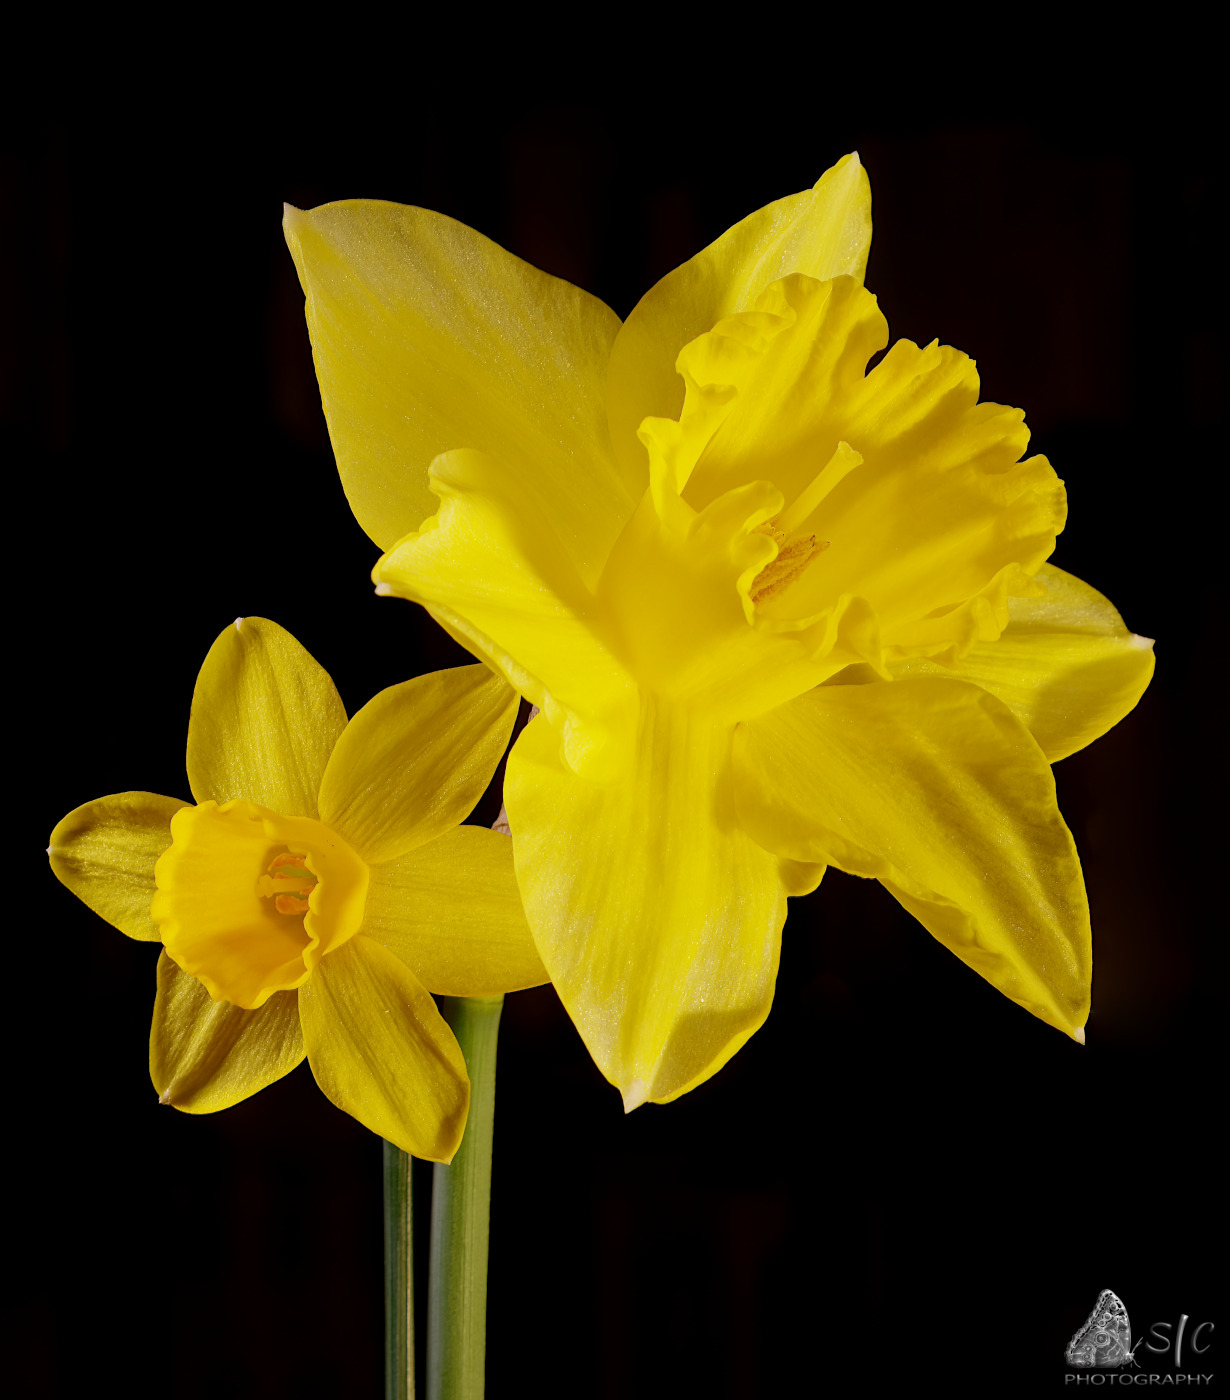 Narcissus pseudonarcissus and Narcissus jonquilla